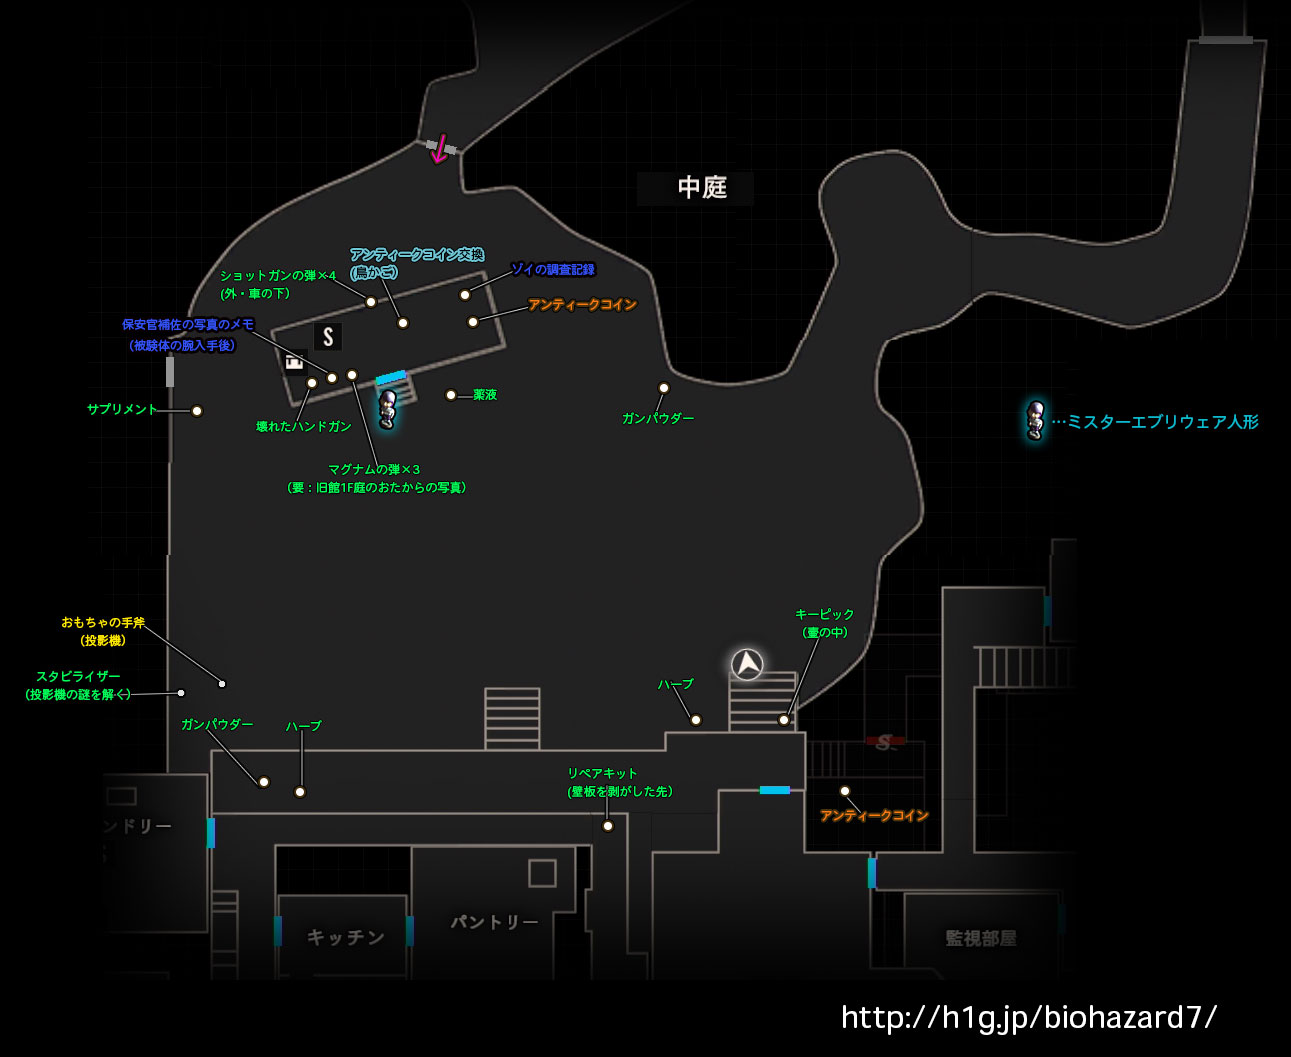 中庭 旧館 バイオハザード7 攻略wiki Biohazard 7 Resident Evil ヘイグ攻略まとめwiki